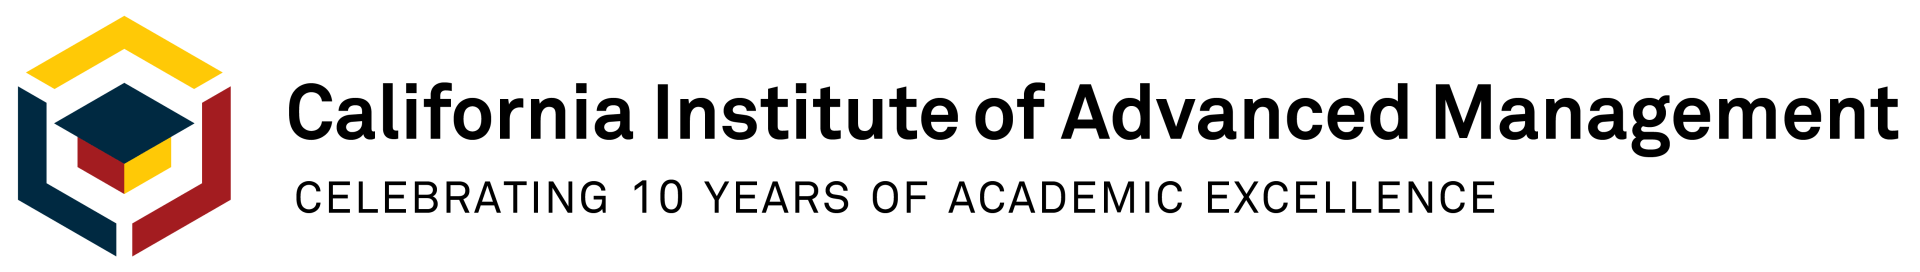 California Institute of Advanced Management